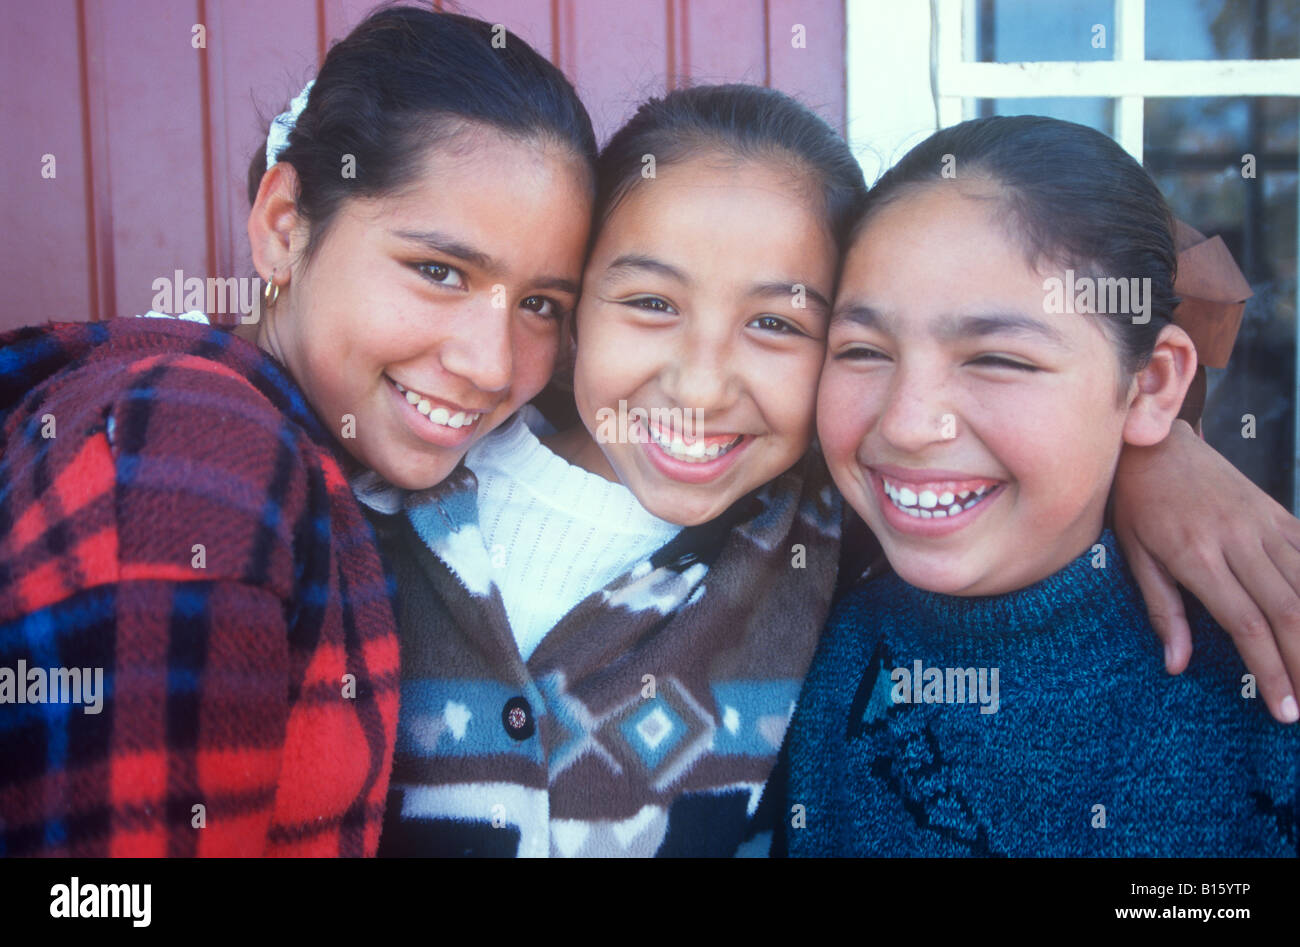 Three Hispanic girlfriends smiling. Stock Photo